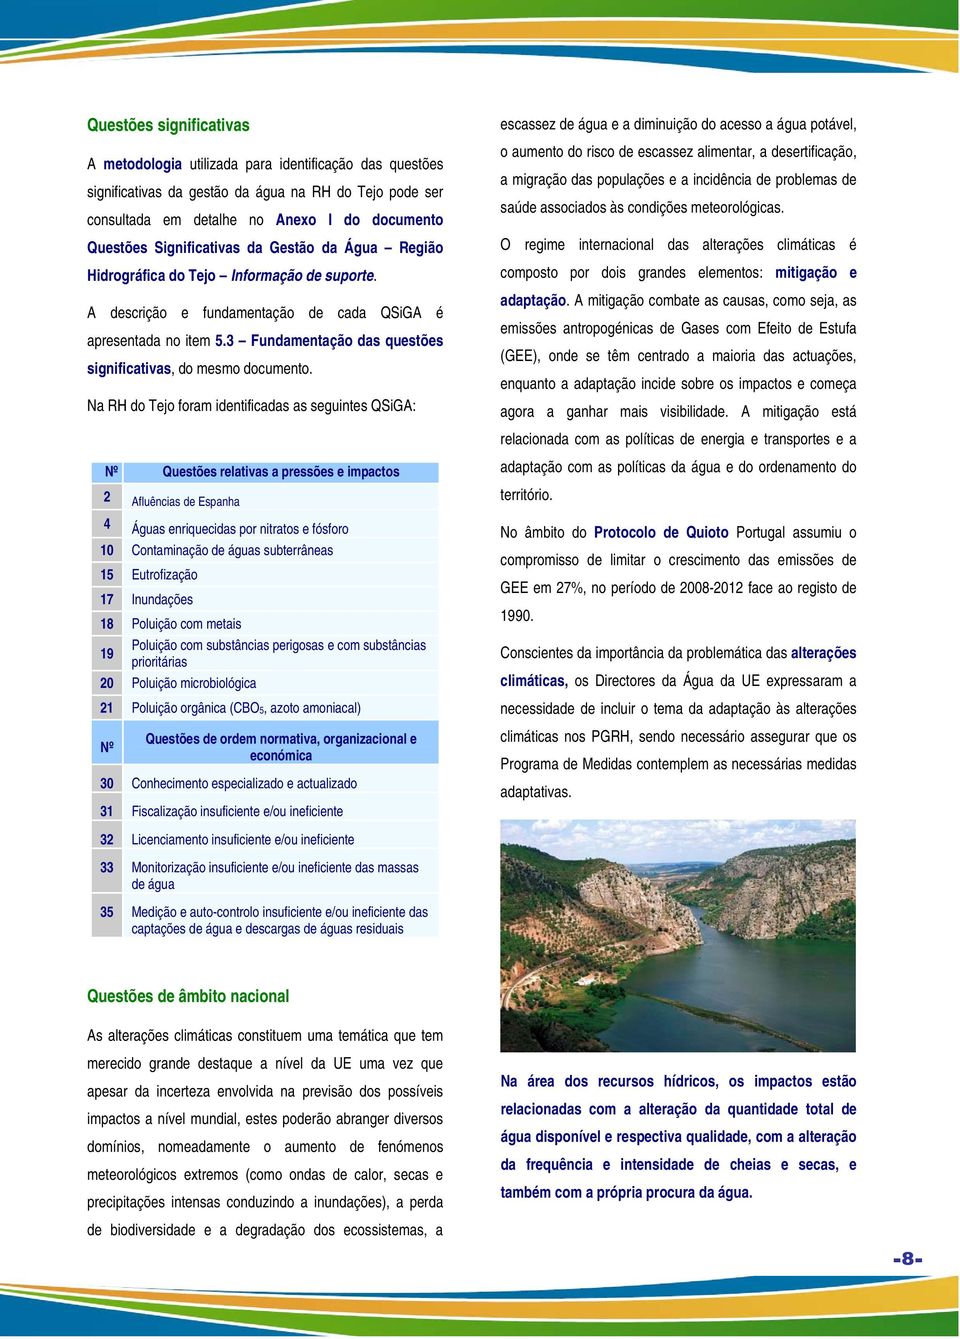 Na RH d Tej fram identificadas as seguintes QSiGA: Nº Questões relativas a pressões e impacts 2 Afluências de Espanha 4 Águas enriquecidas pr nitrats e fósfr 10 Cntaminaçã de águas subterrâneas 15